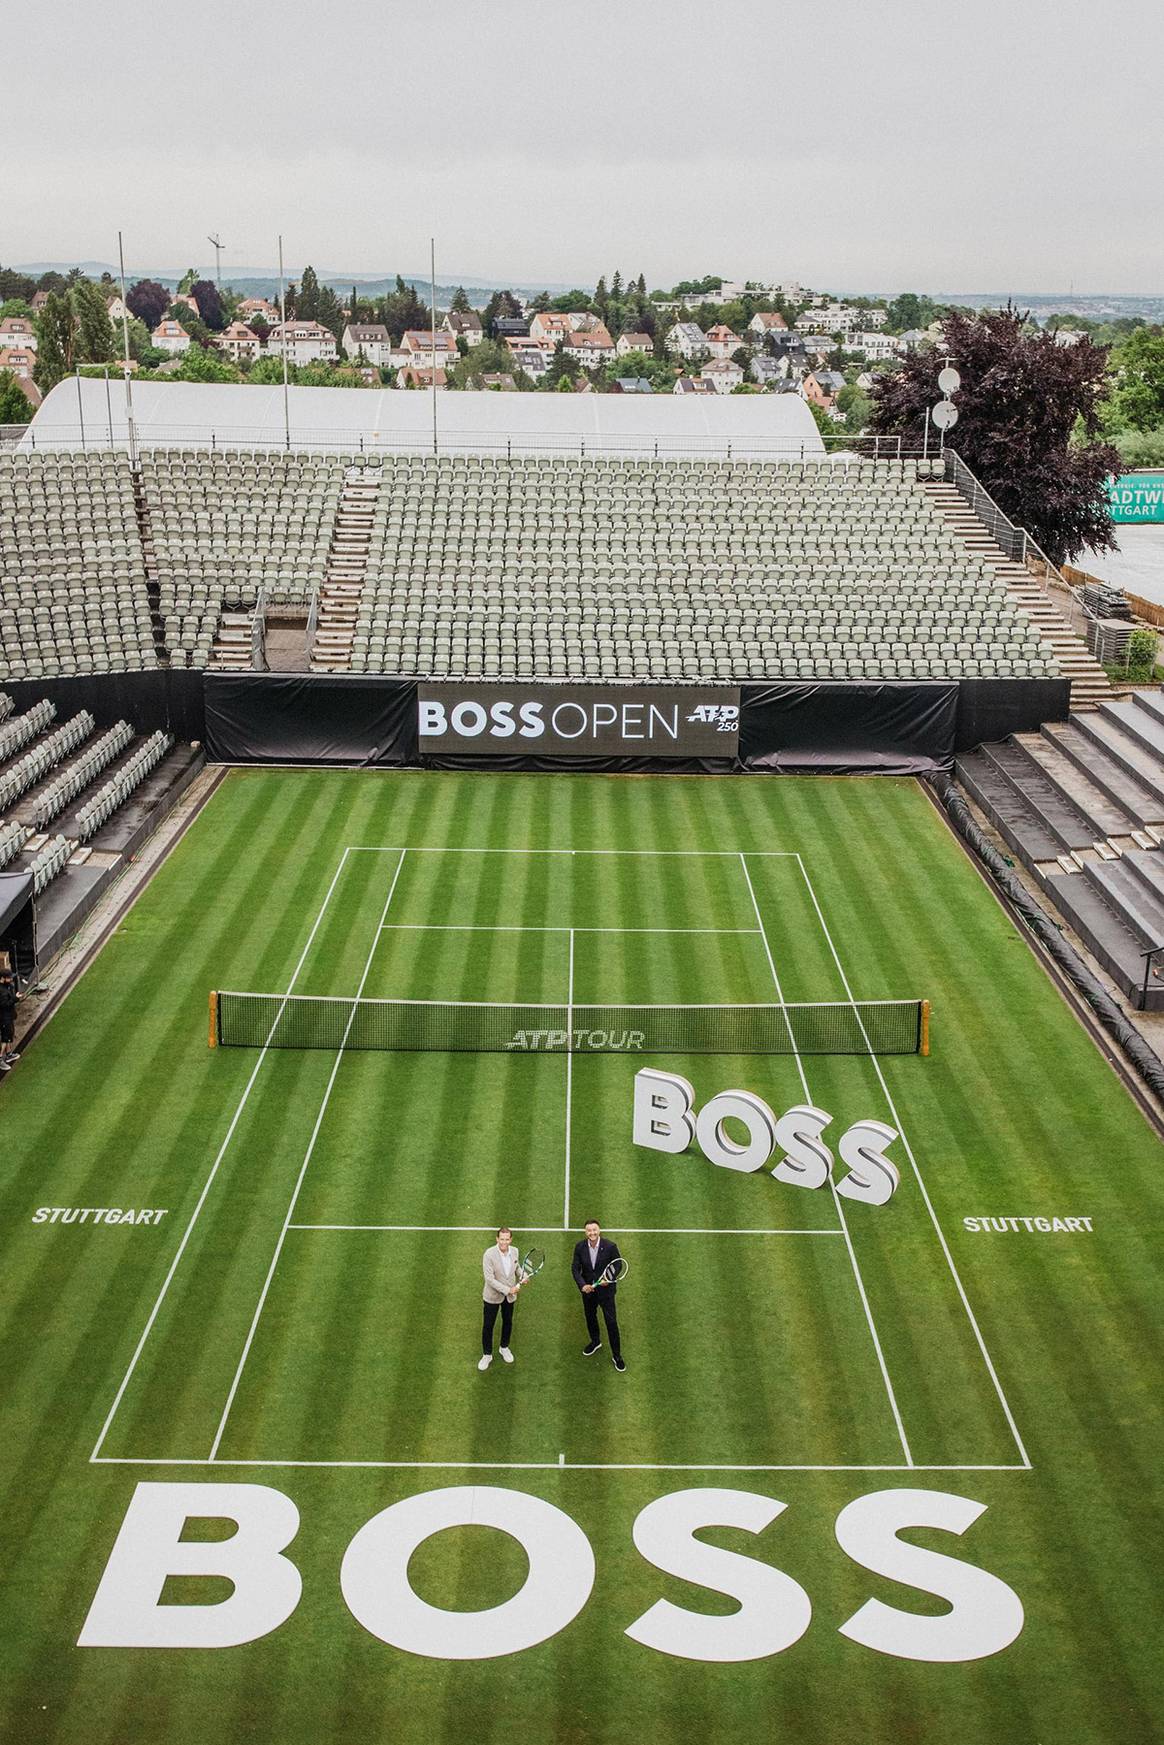 Eine neue Tennisära beginnt: Die BOSS Open auf dem Stuttgarter Weissenhof